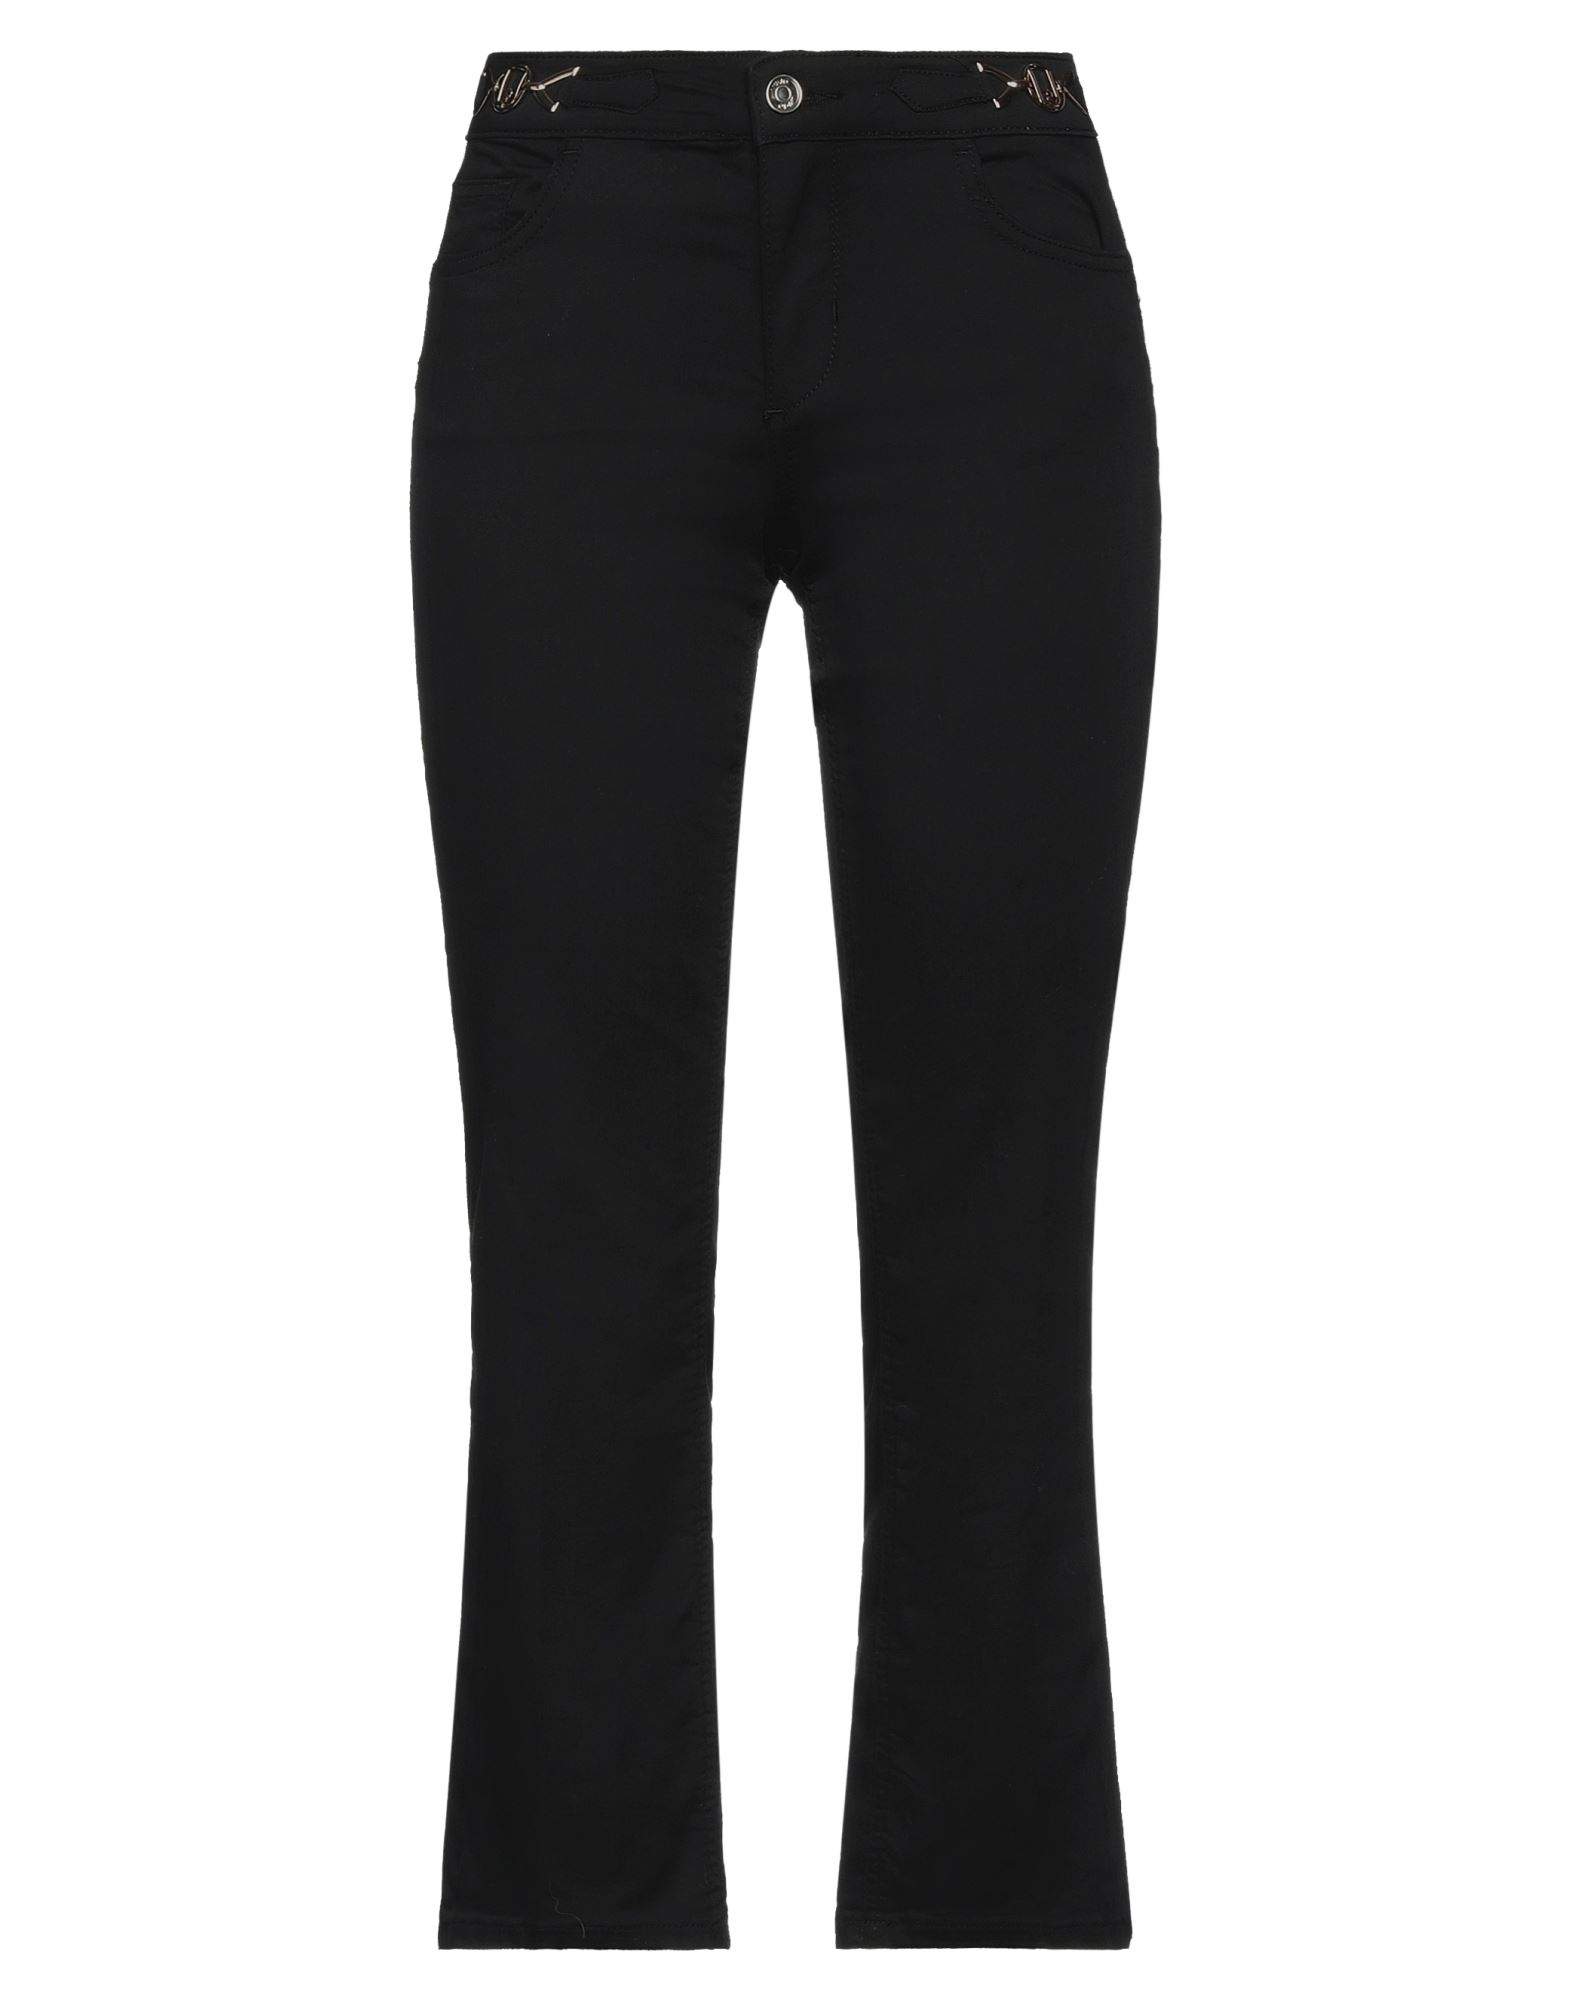 Shop Liu •jo Woman Pants Black Size 25 Cotton, Polyester, Elastane